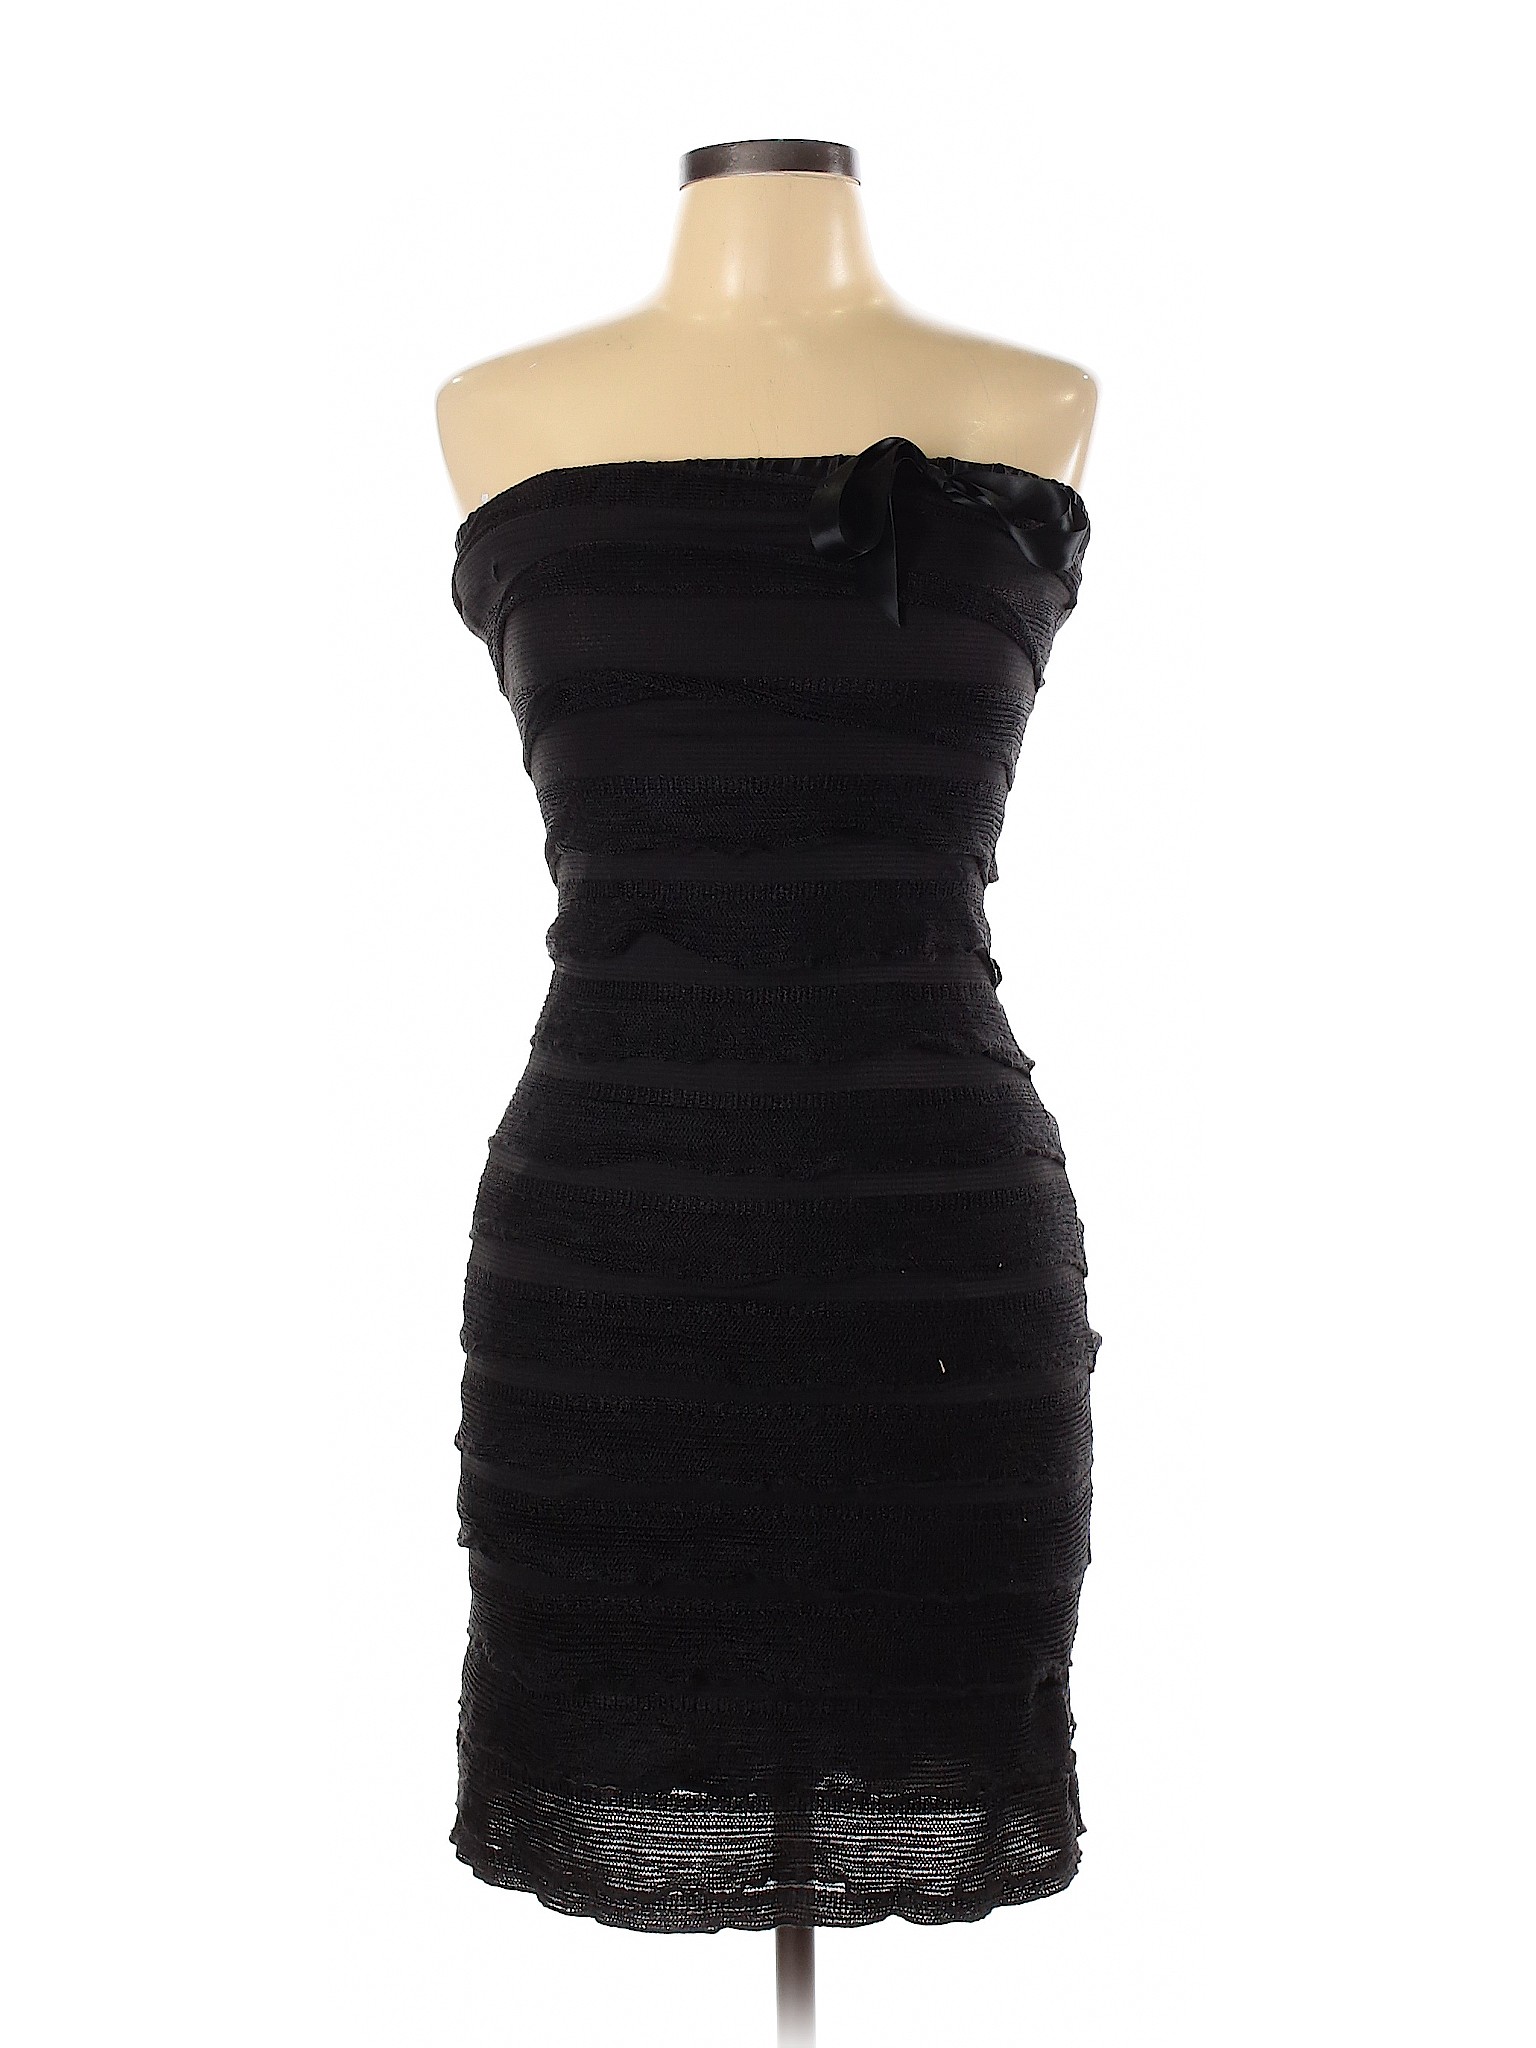 Forever 21 Women Black Cocktail Dress L | eBay